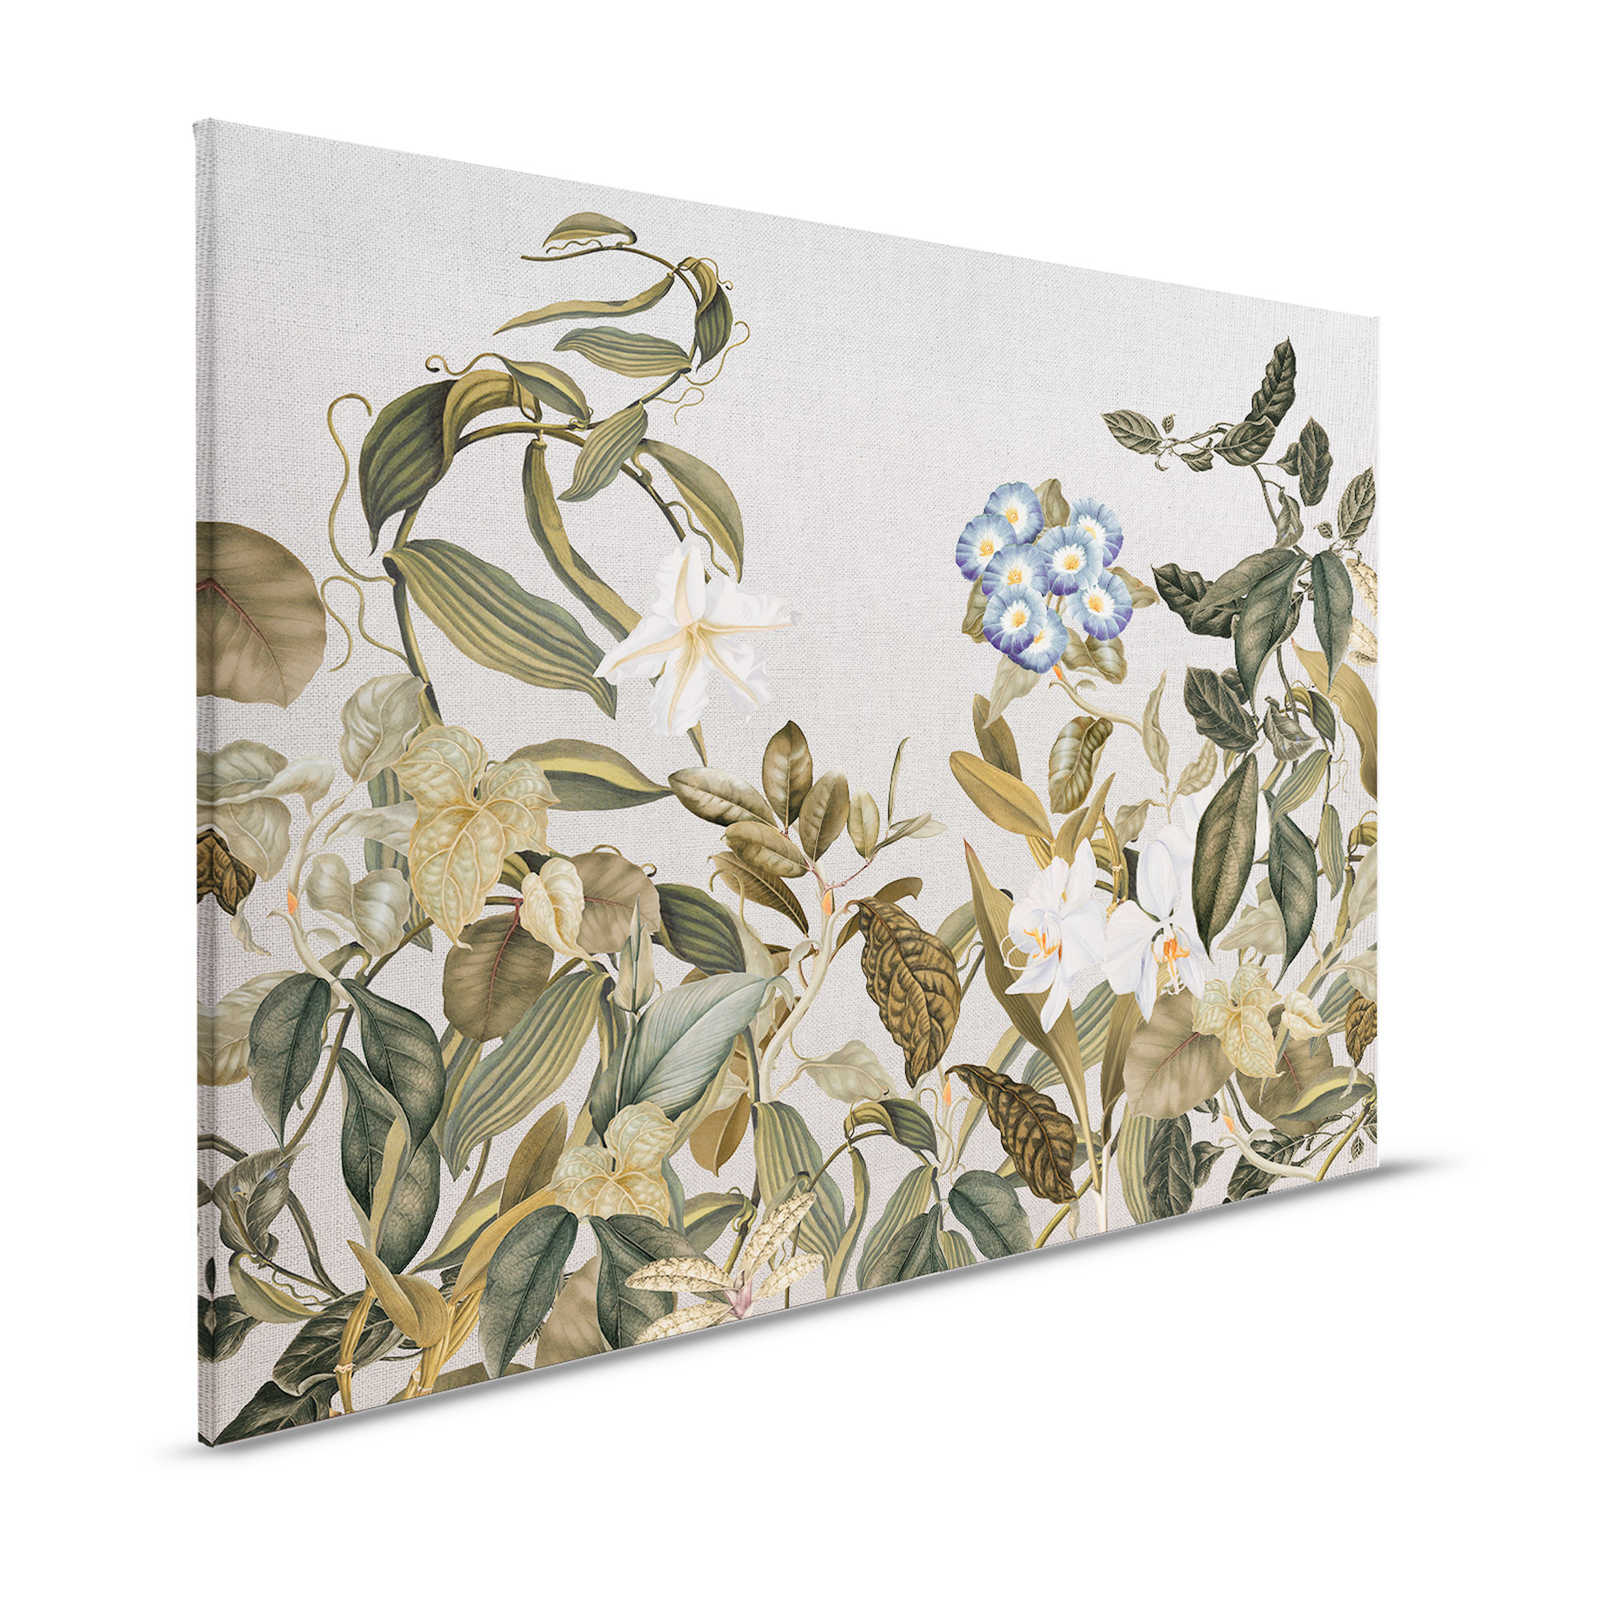 Lienzo estilo botánico Flores, hojas y aspecto textil - 1,20 m x 0,80 m
